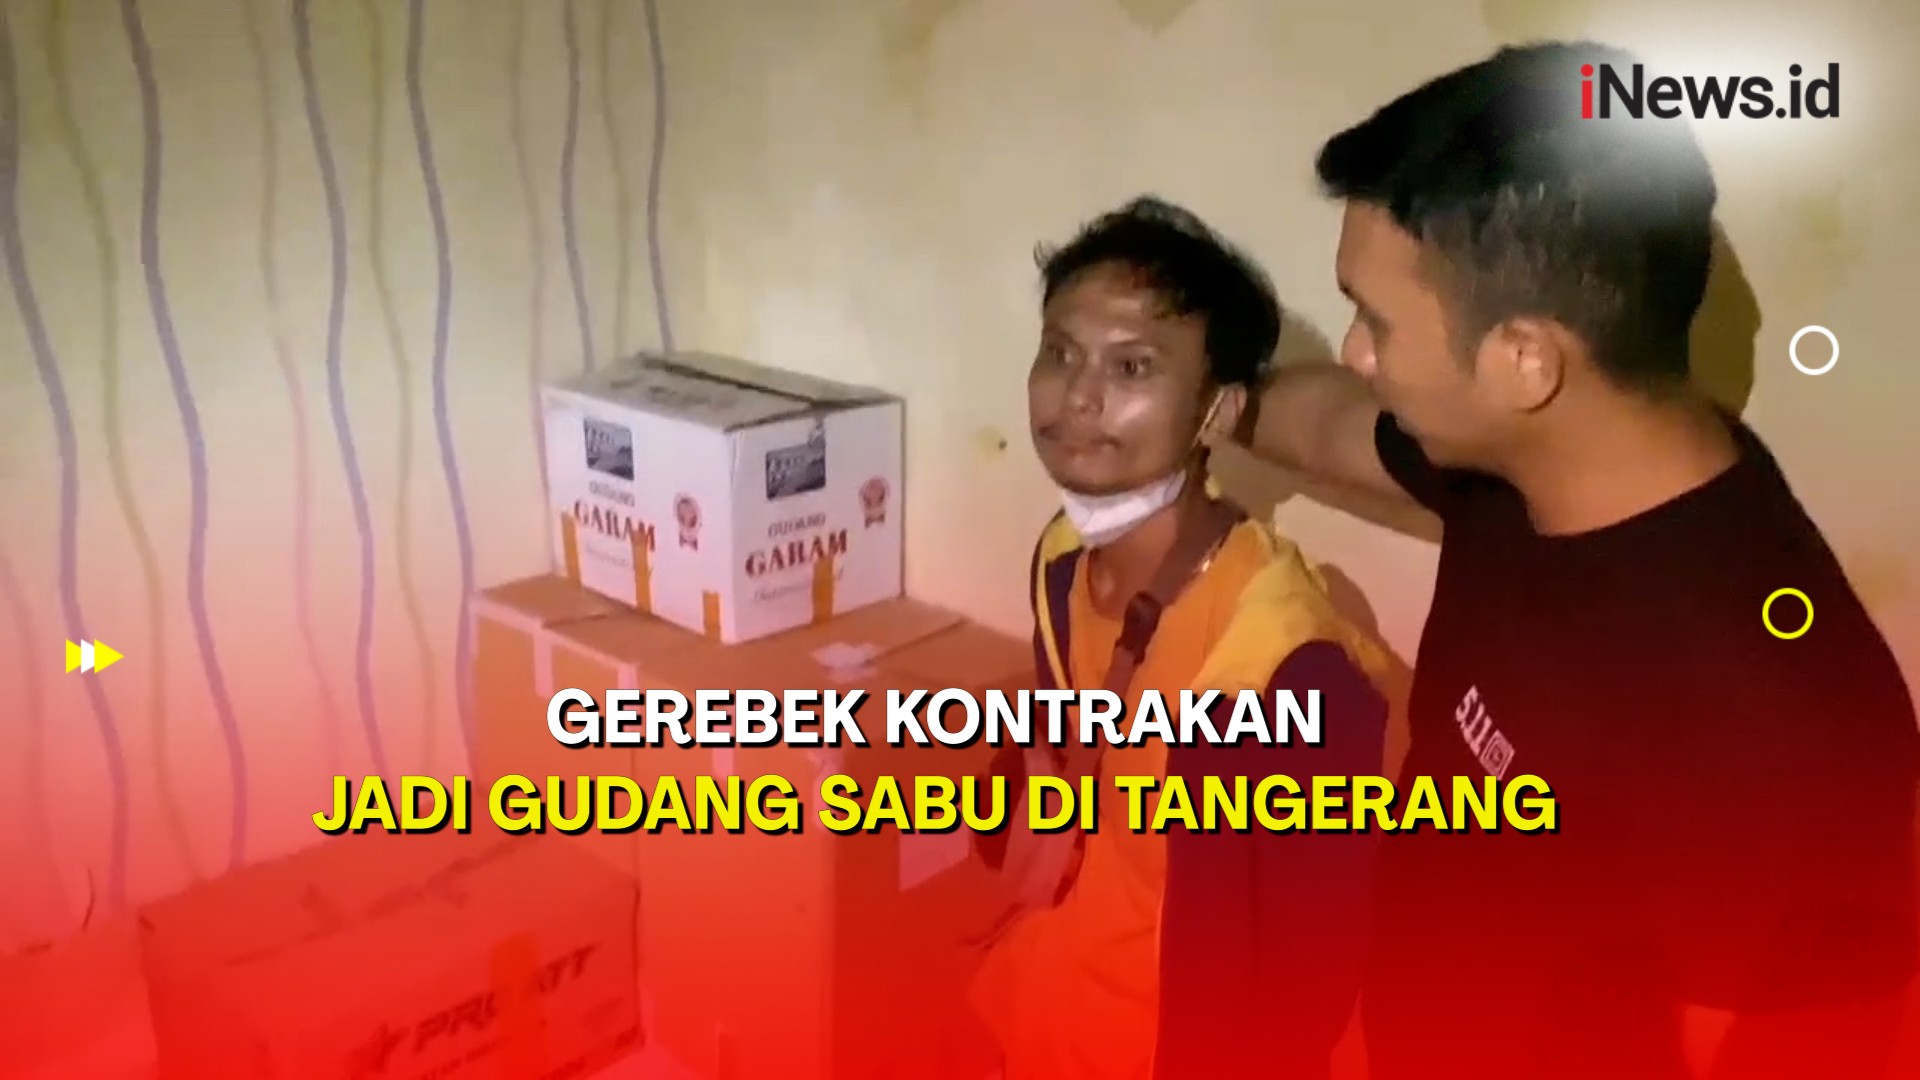 Polda Metro Jaya Gerebek Kontrakan Jadi Gudang Sabu 72 Kg di Tangerang 